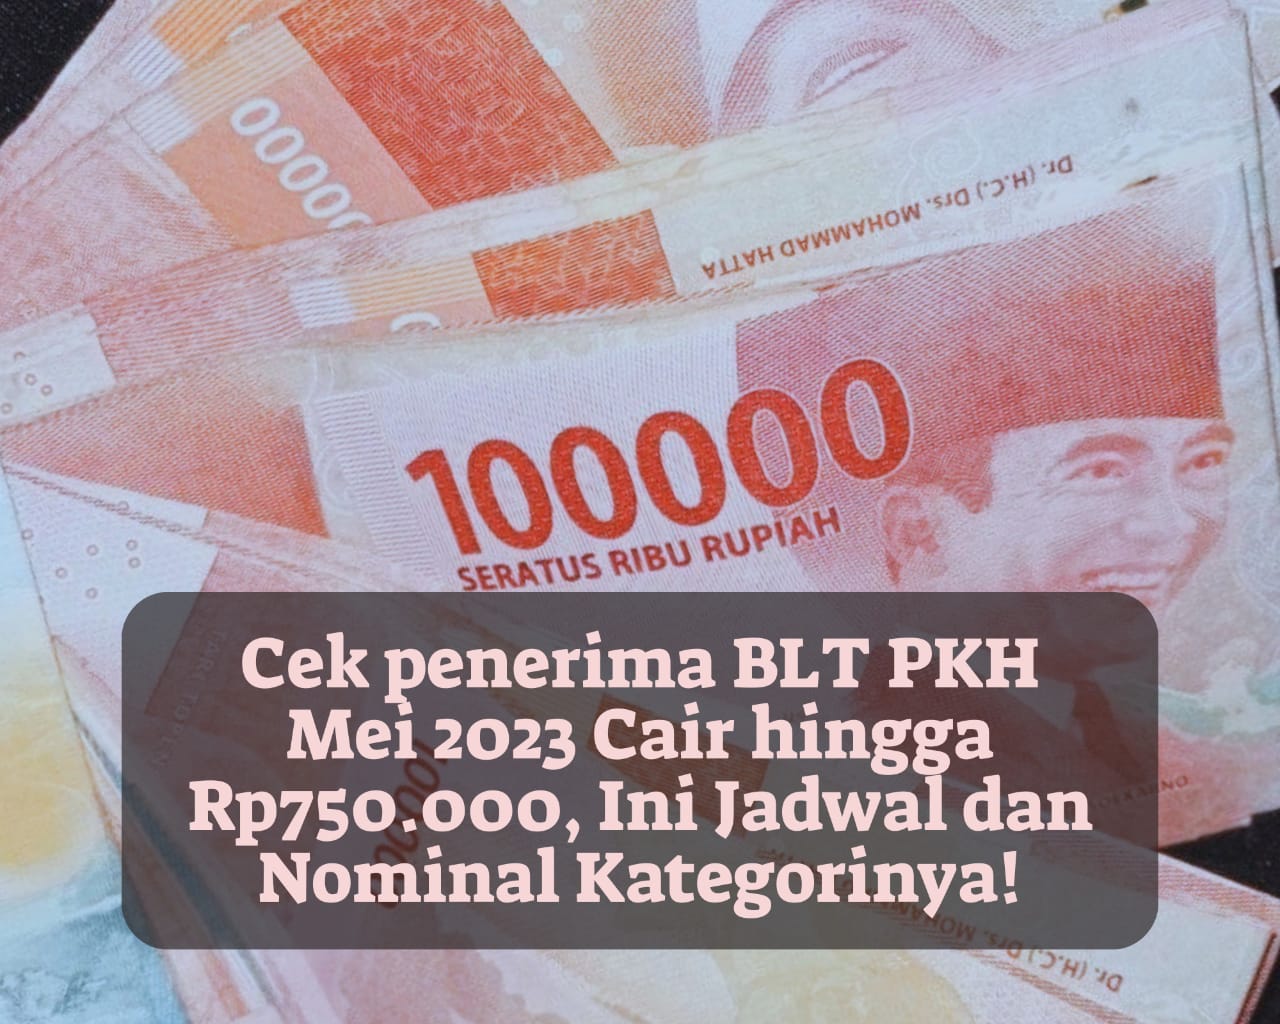 Cek Penerima BLT PKH Mei 2023 Cair hingga Rp750.000, Ini Jadwal dan Nominal Kategorinya!